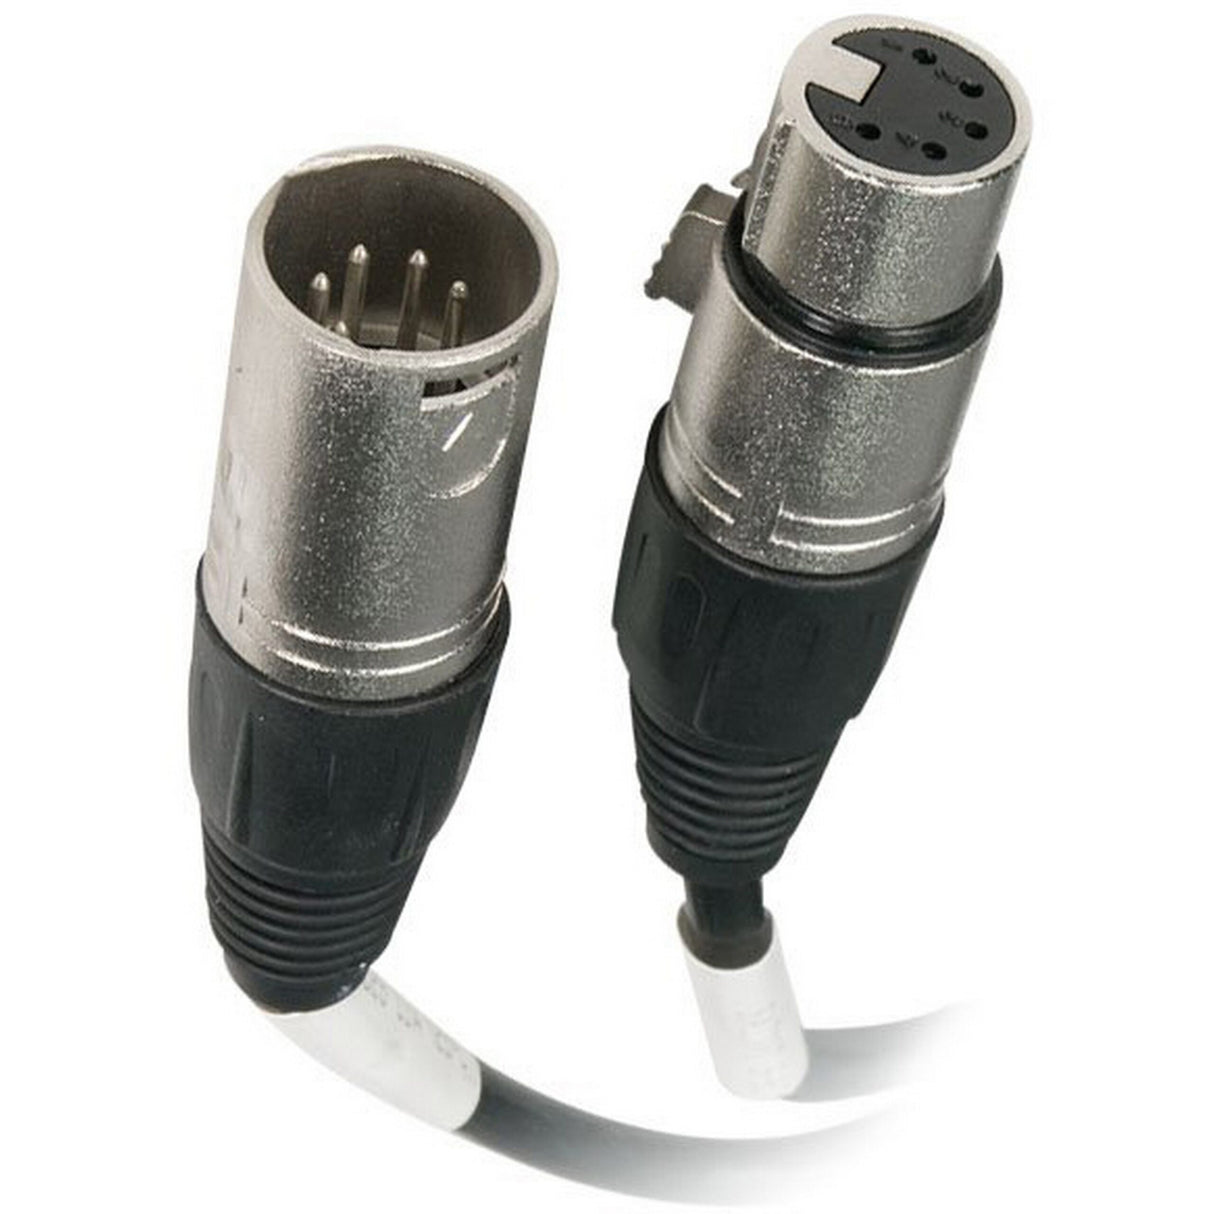 Chauvet DMX5P5FT 5-Pin DMX Cable, 5 Foot